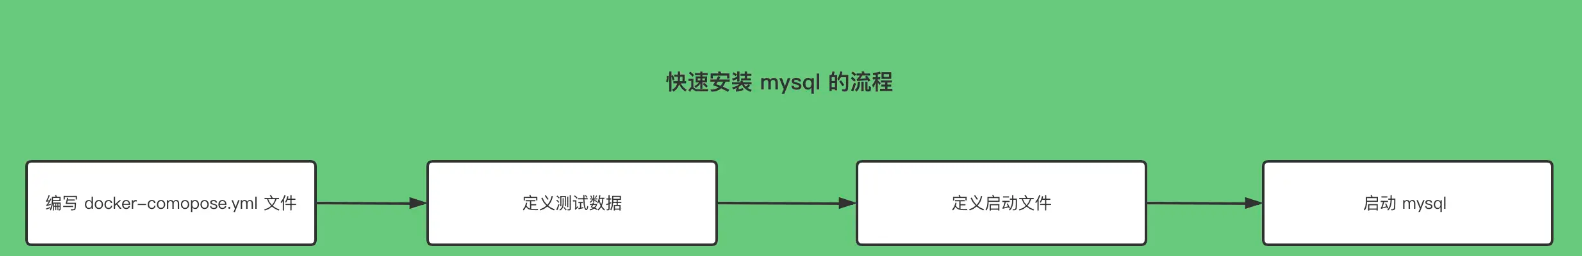 如何使用 docker 搭建一个 mysql 服务